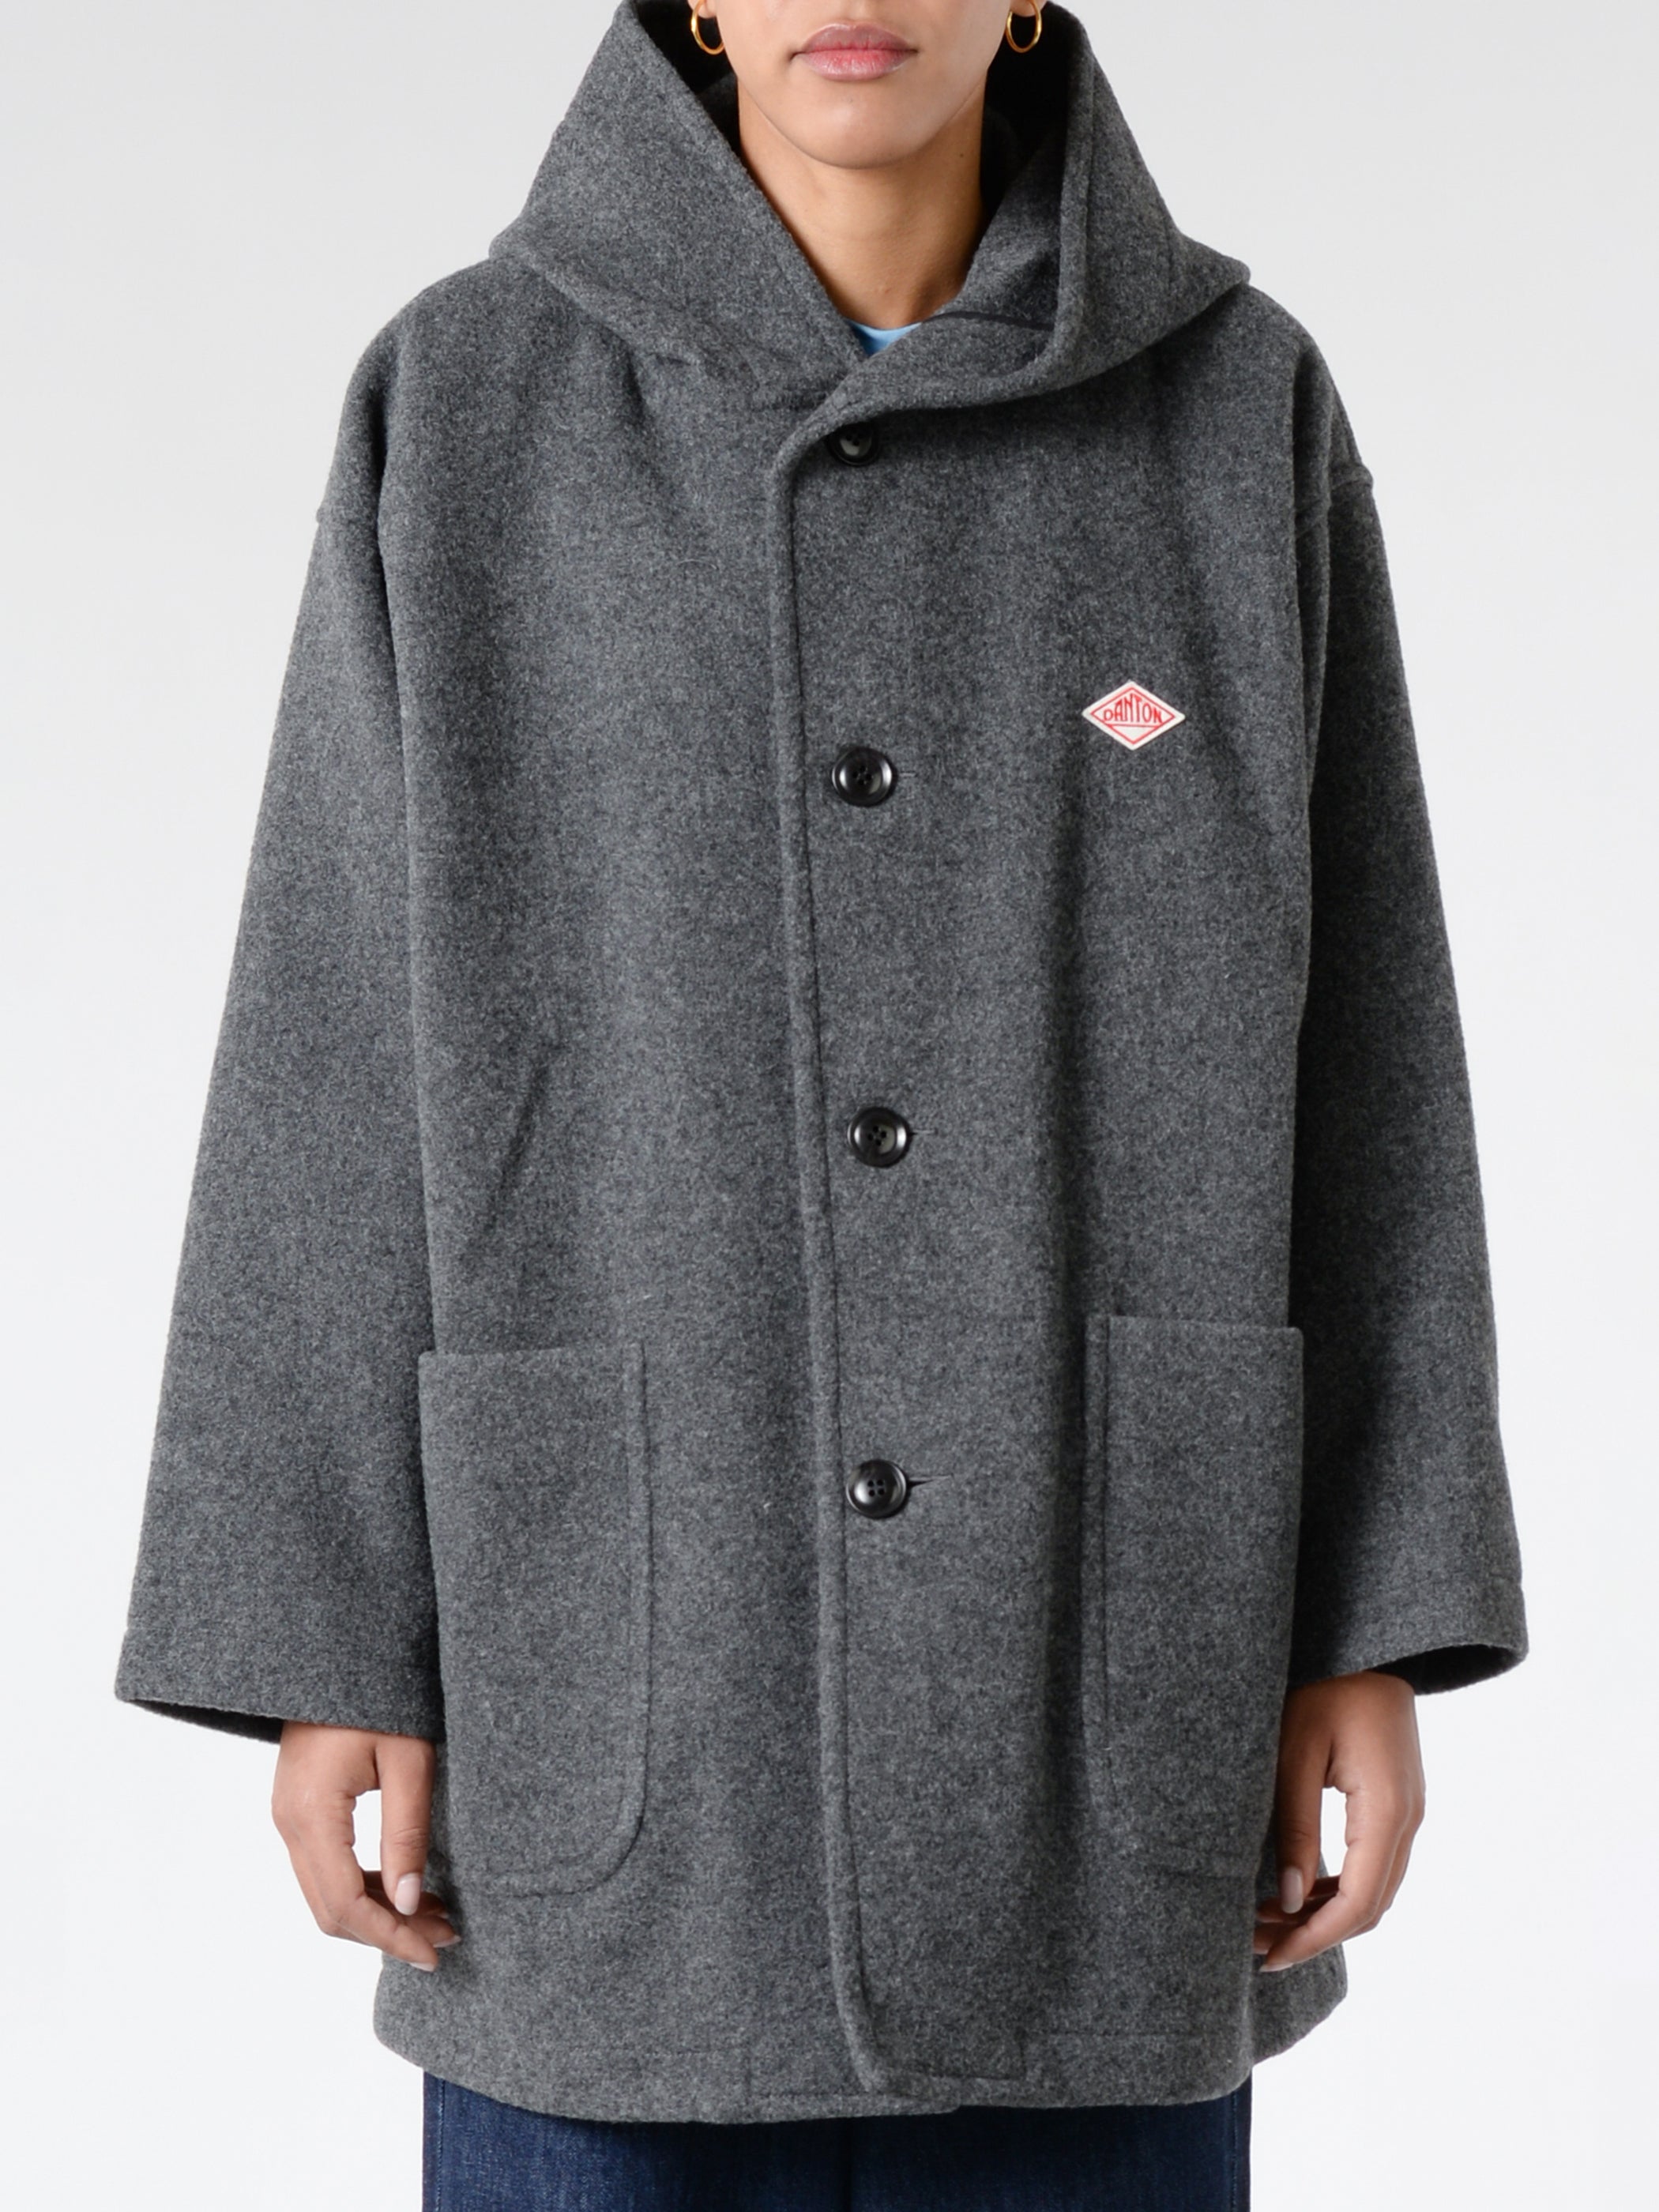 Women's Wool Light Pile Hooded Coat